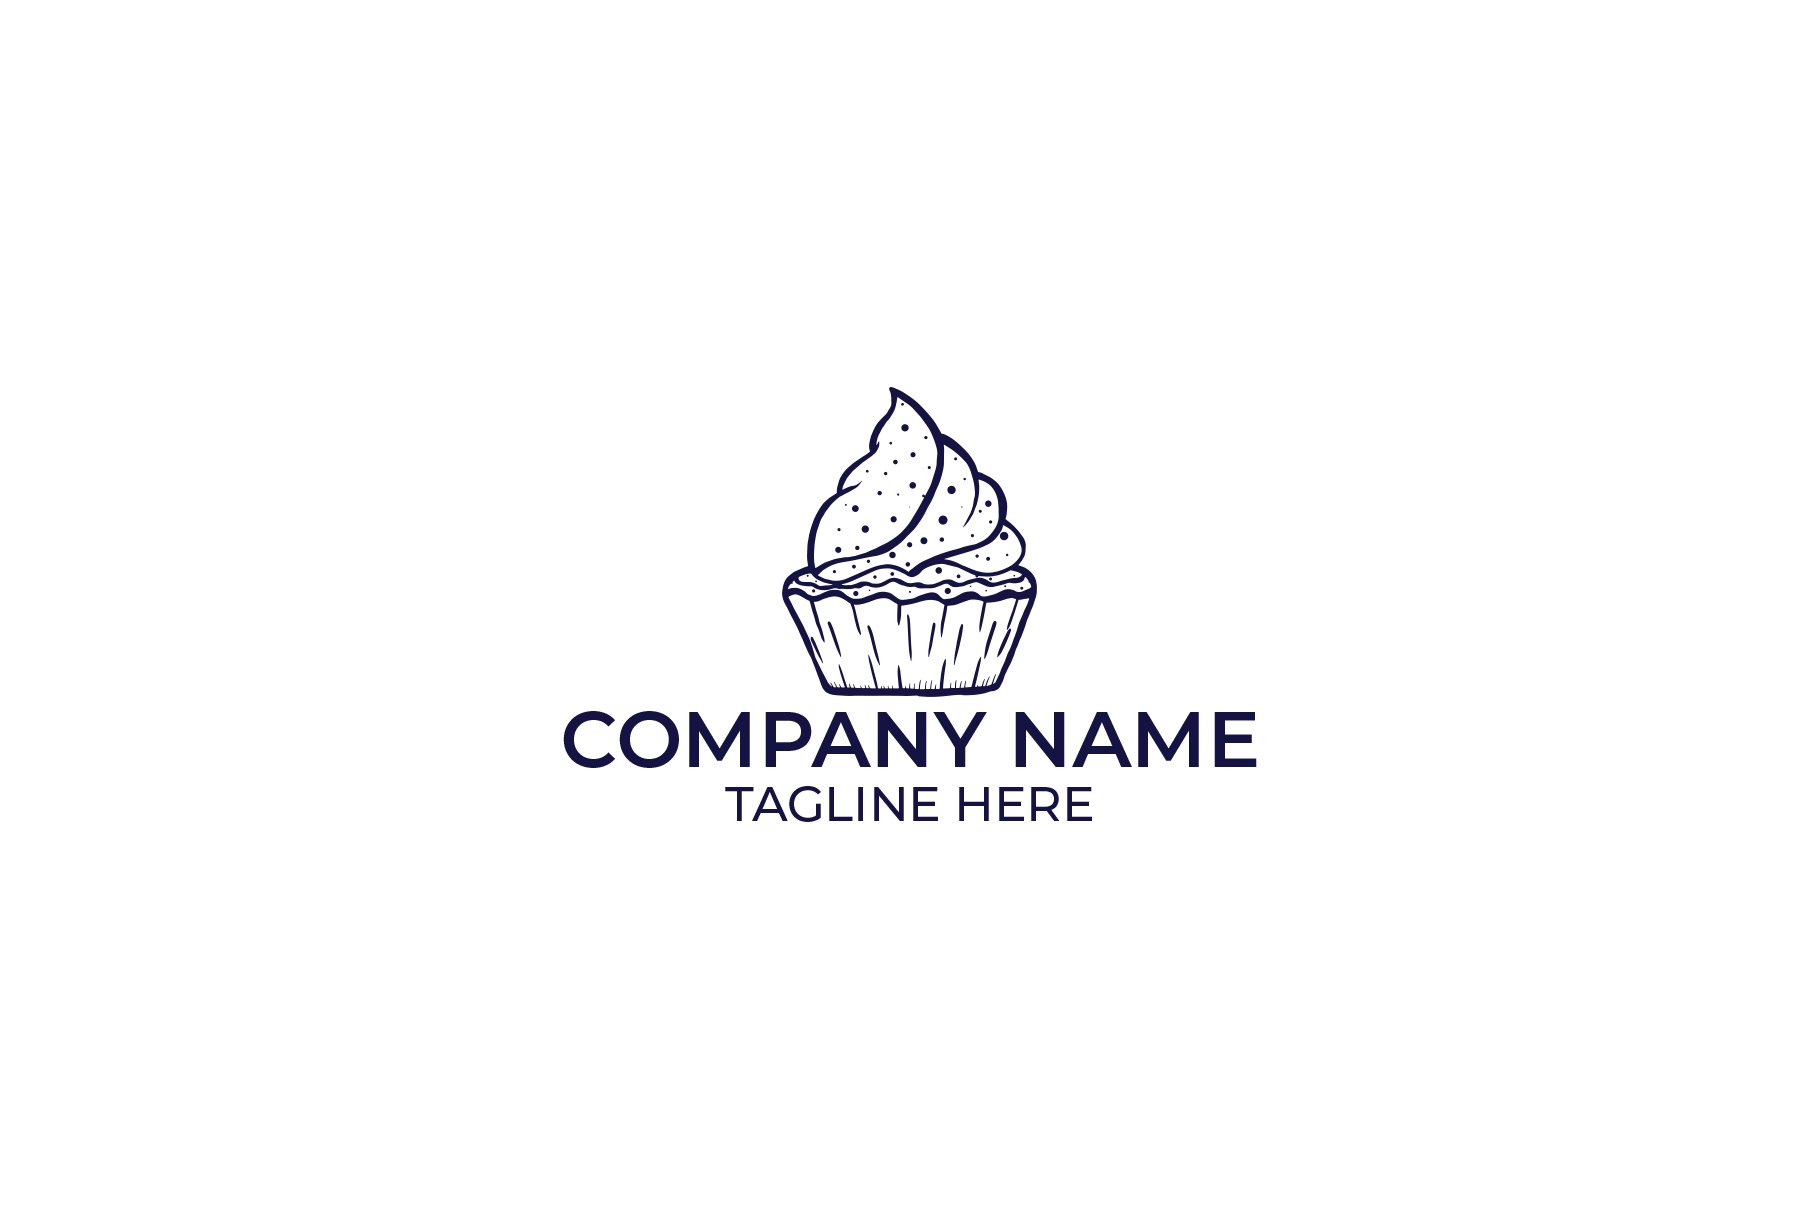 Cake Logo Design cover image.